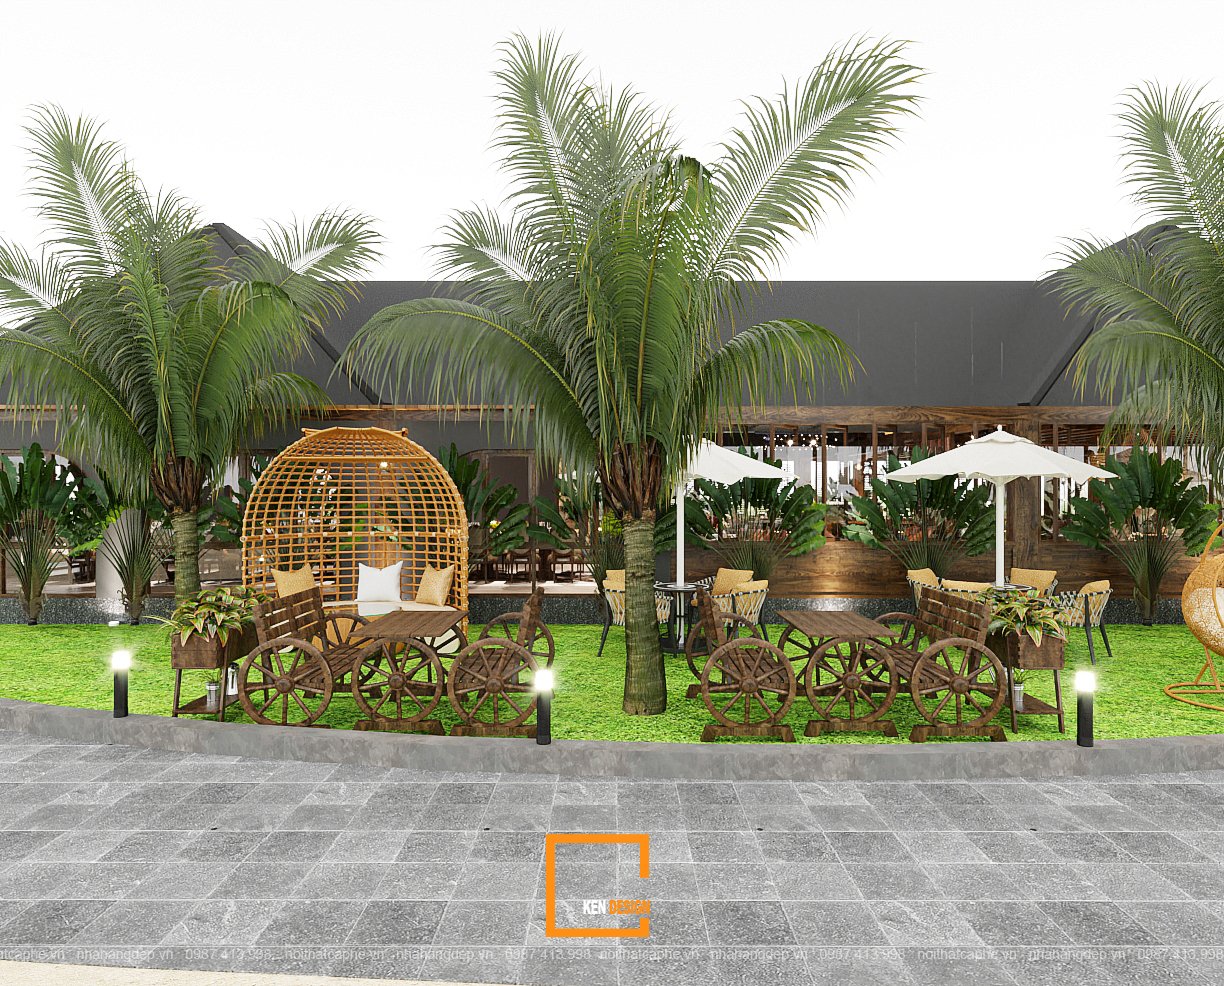 thiet ke nha hang lan ha garden 6 - Nét cổ điển trong thiết kế nhà hàng Lan Hạ Garden